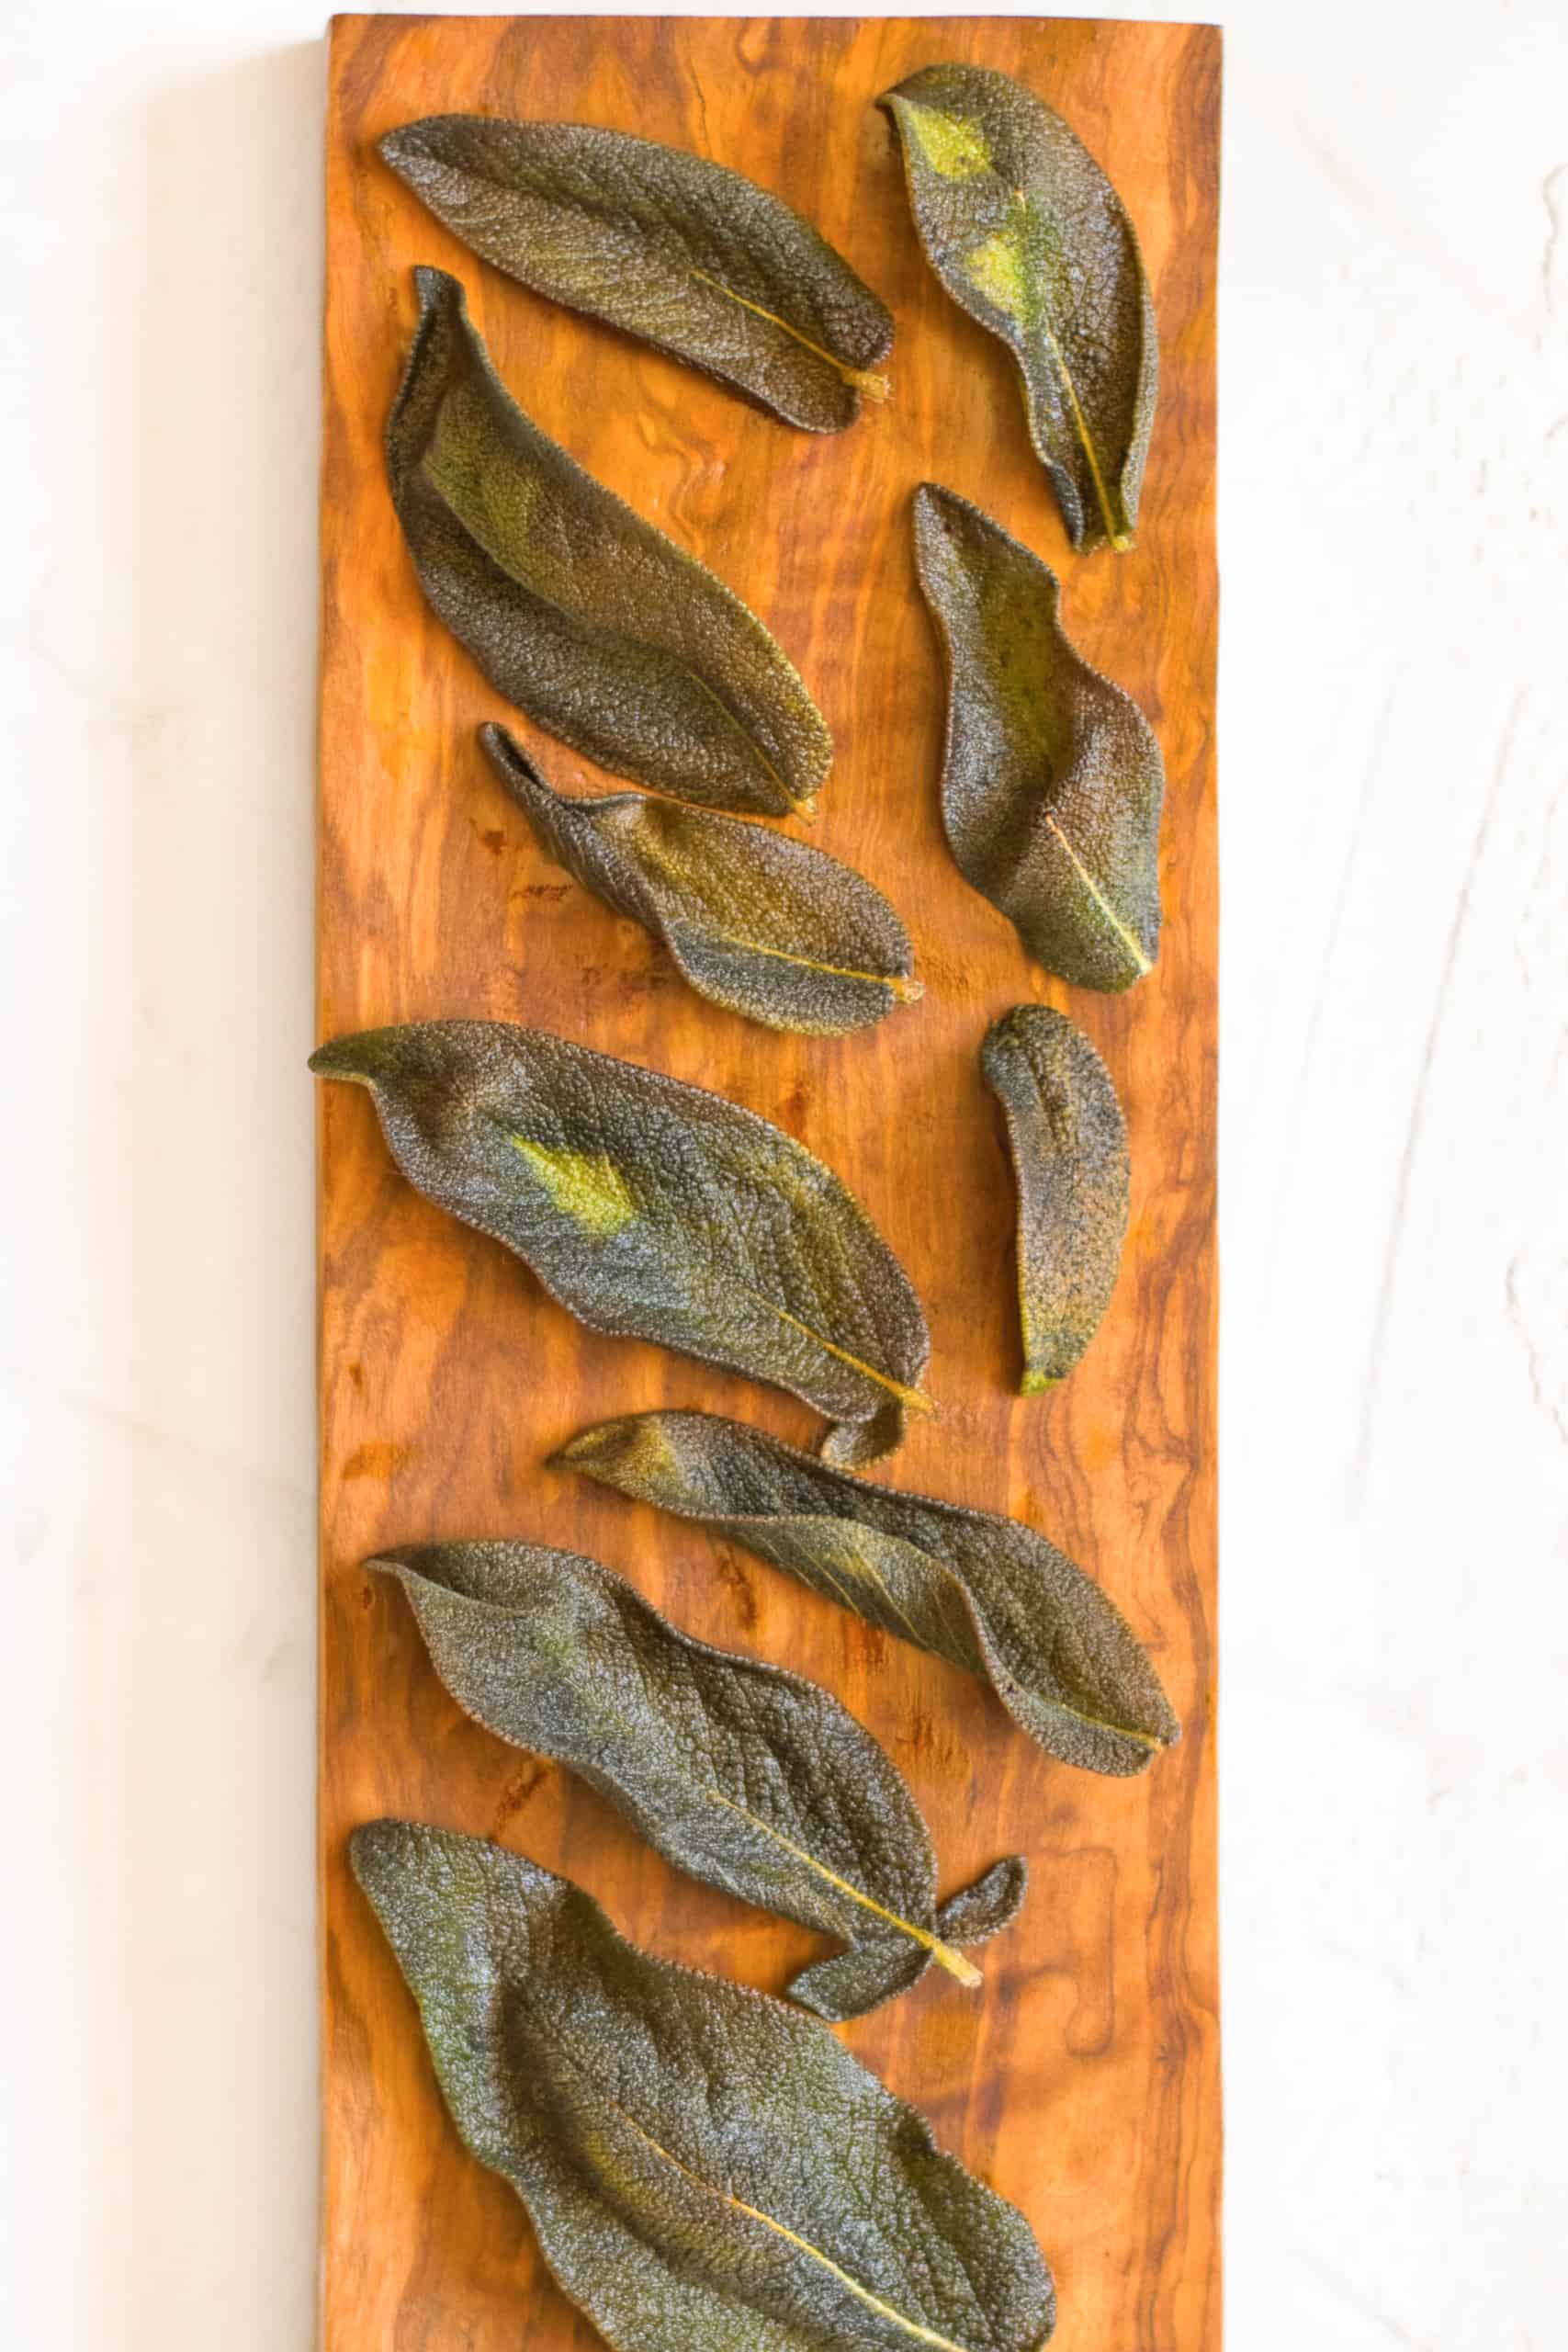 Crispy fried sage on wooden board.